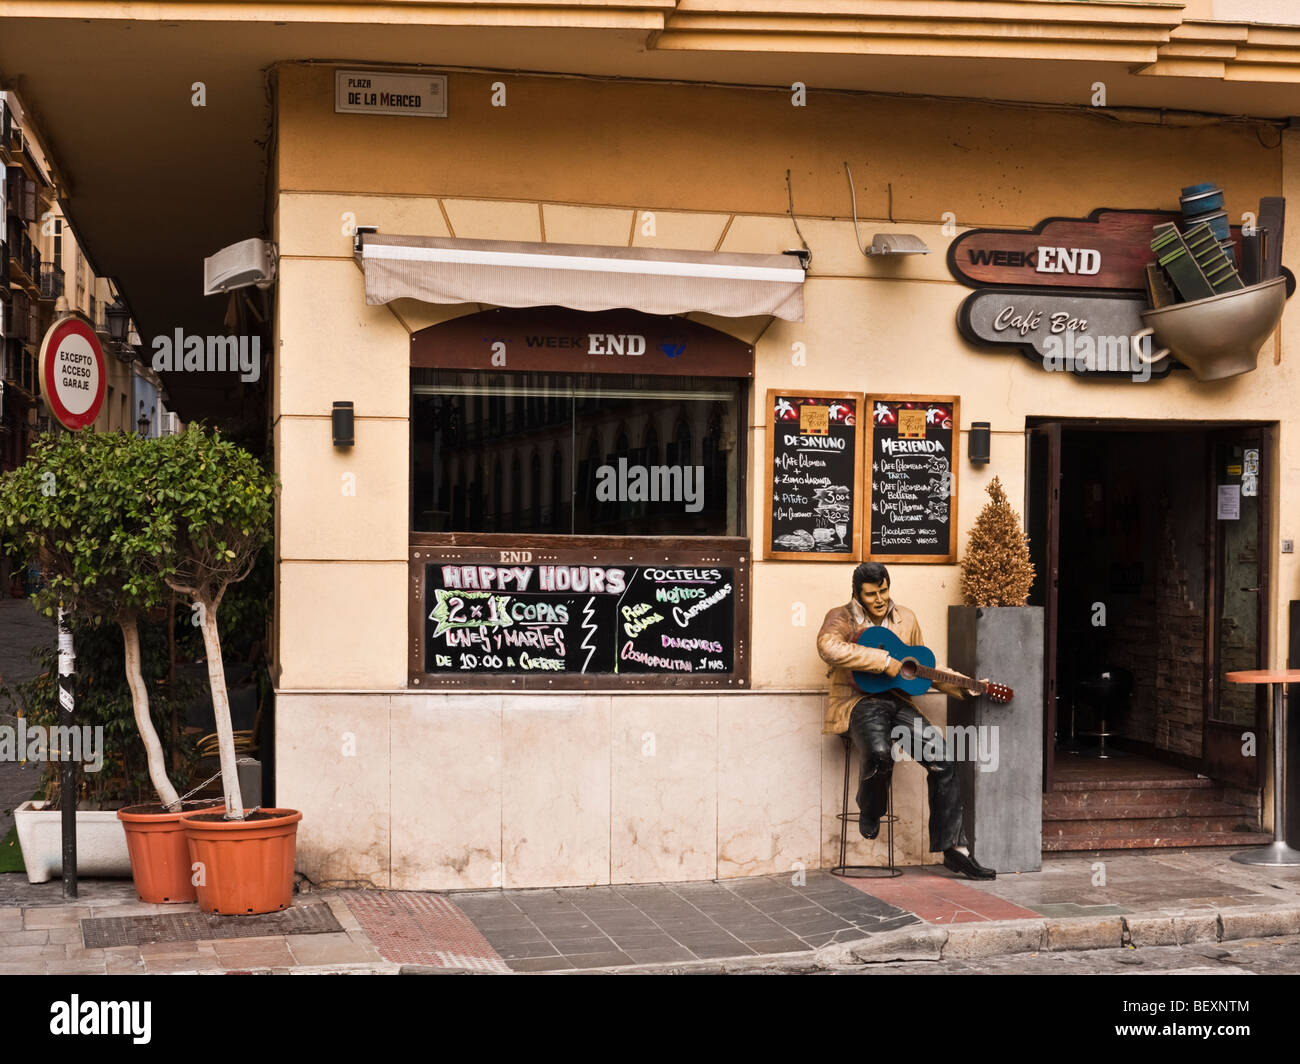 La taille de modèle de vie Elvis Presley à l'extérieur le week-end Cafe Bar, la Plaza de la Merced, Malaga, Espagne Banque D'Images